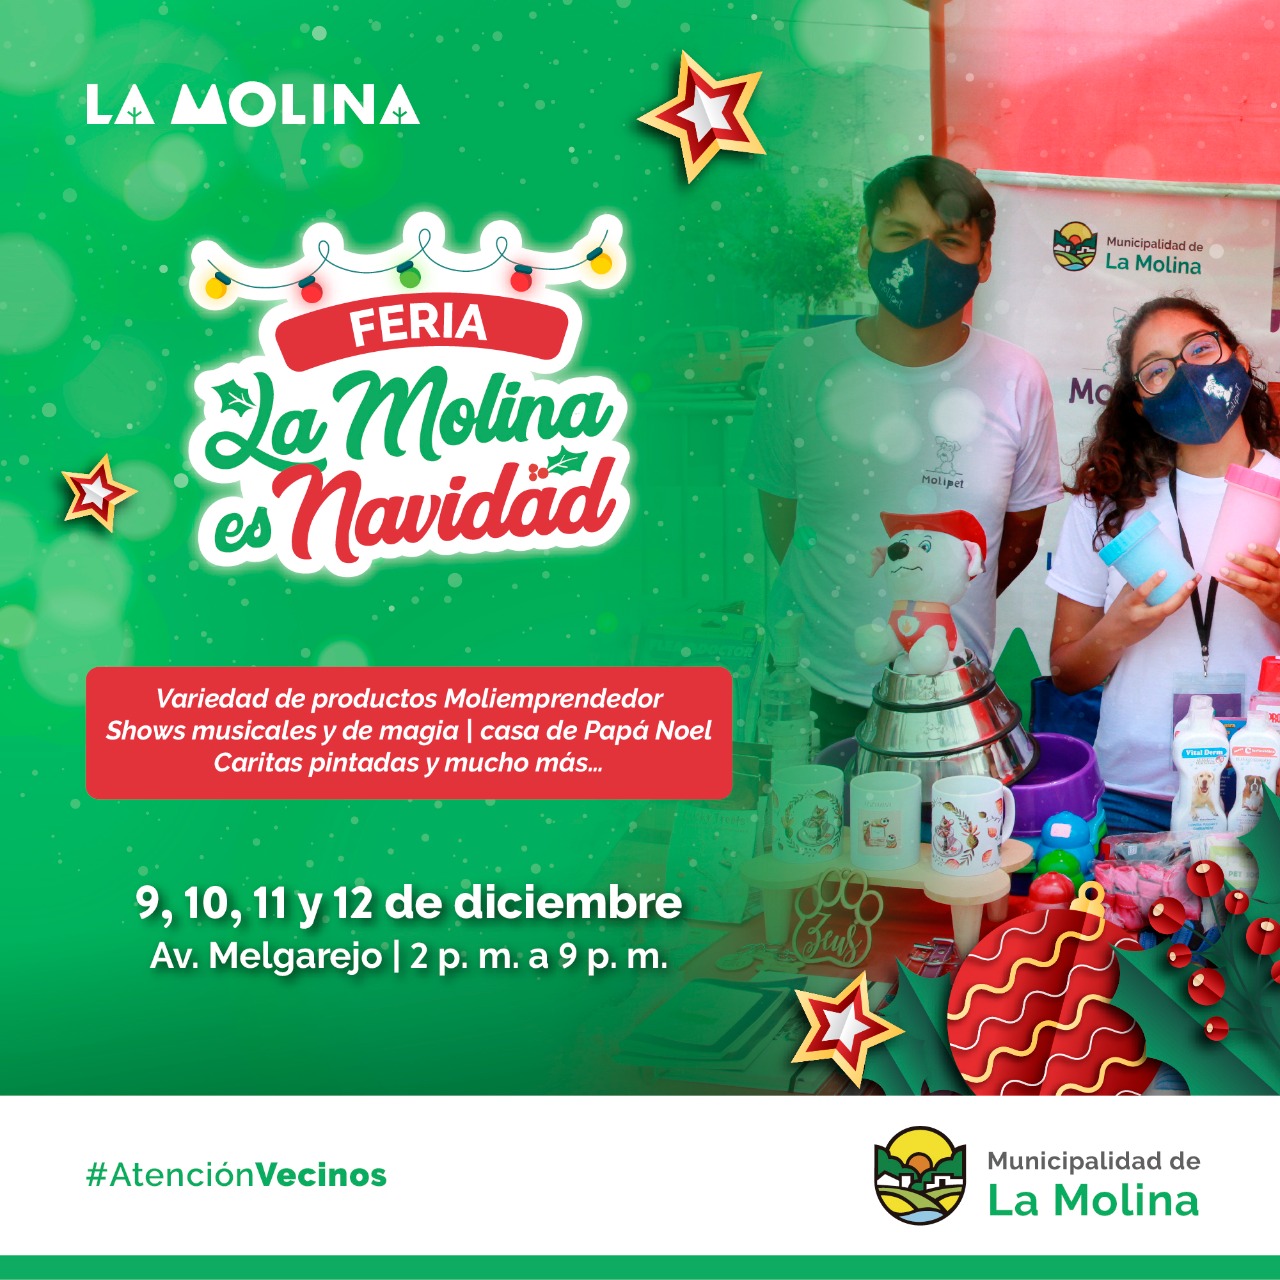 FERIA LA MOLINA ES NAVIDAD Vecinos, la feria "La Molina es Navidad" estará esta semana en la av. Melgarejo. Encontrarás diversos productos para el hogar, shows, caritas pintadas y mucho más